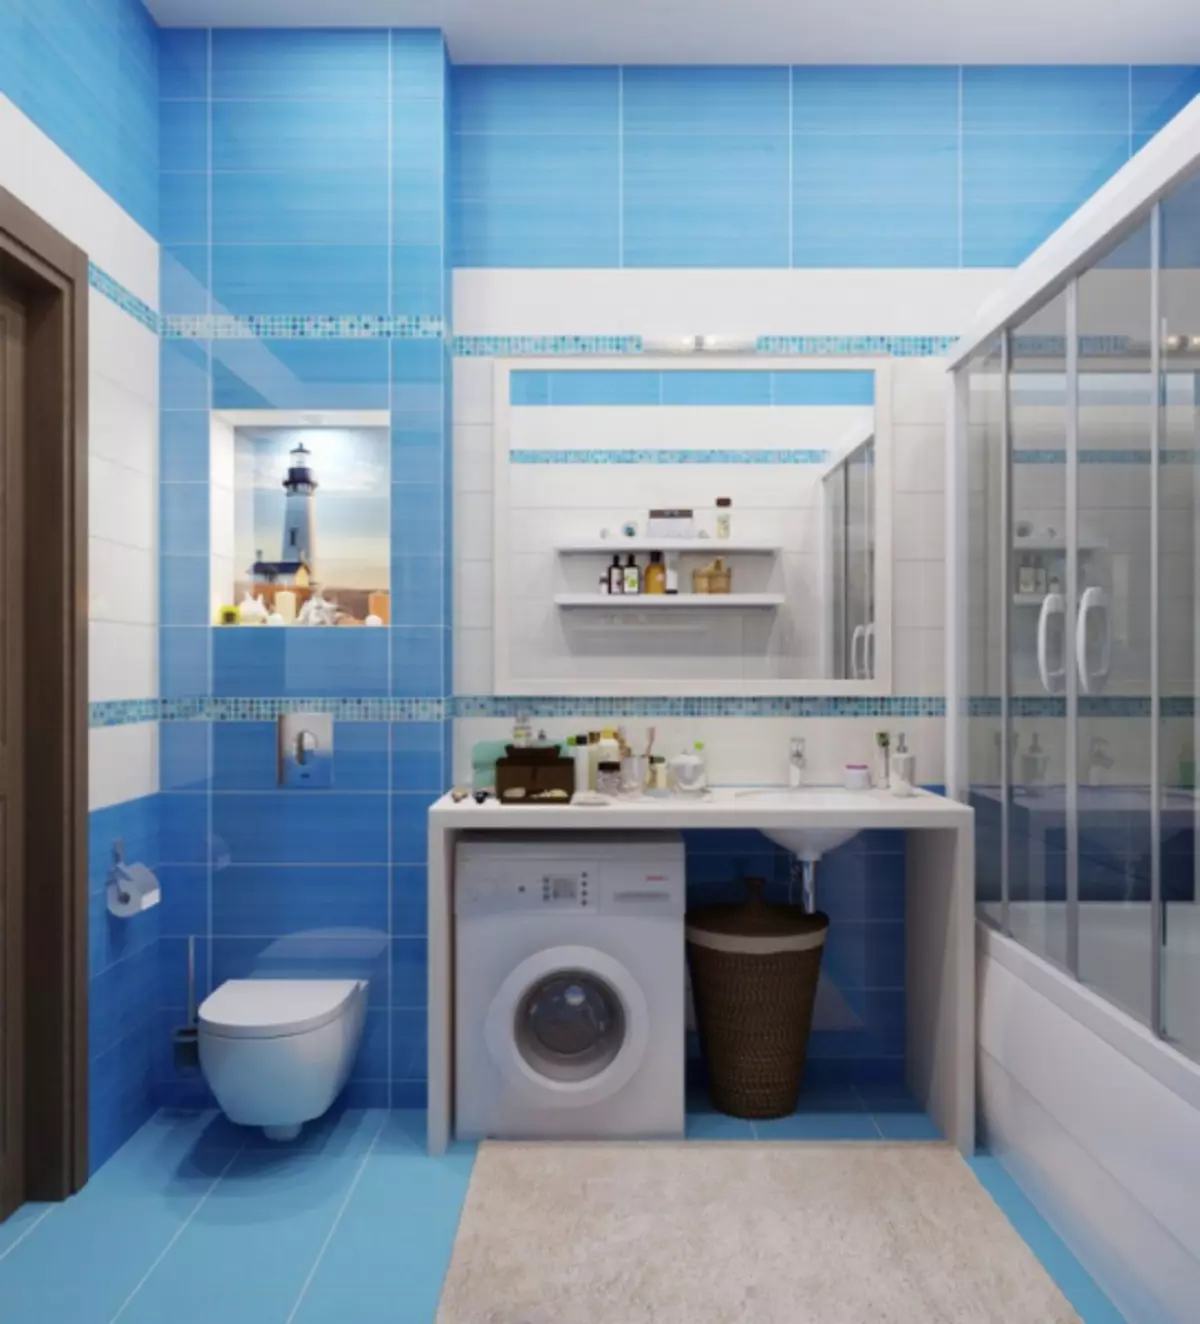 Nội thất phòng tắm kết hợp với nhà vệ sinh: Cách thực hiện đẹp và thiết thực trên không gian nhỏ (38 ảnh)